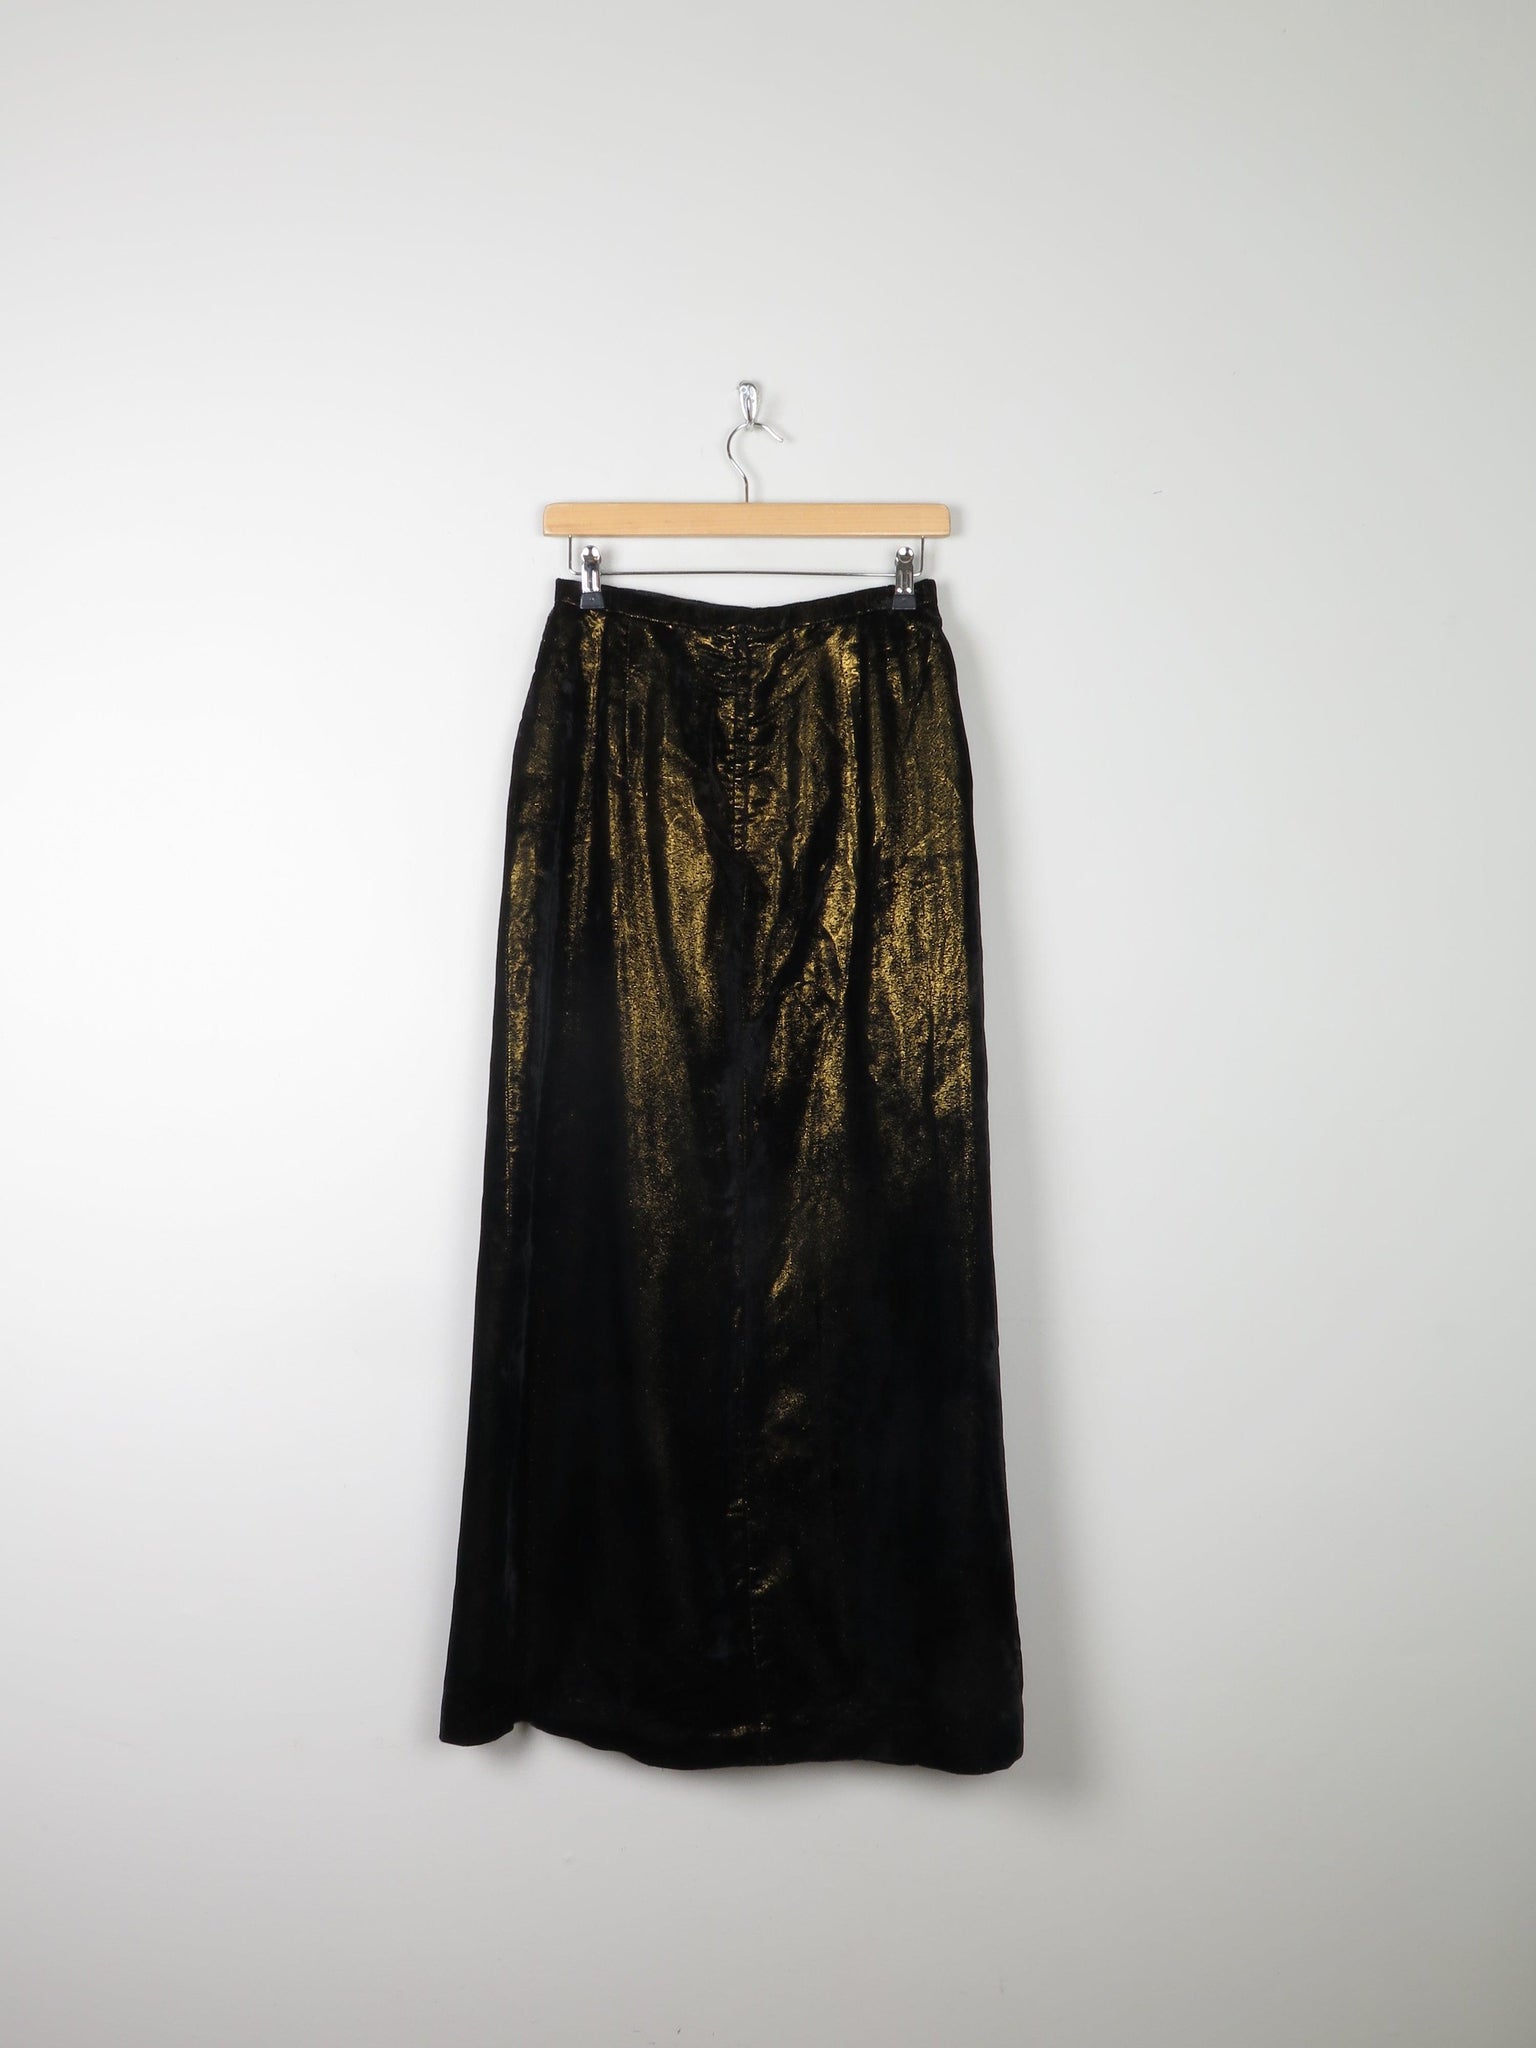 Vintage Black & Gold Shot Fabric Velvet Maxi Skirt 8 26" W - The Harlequin